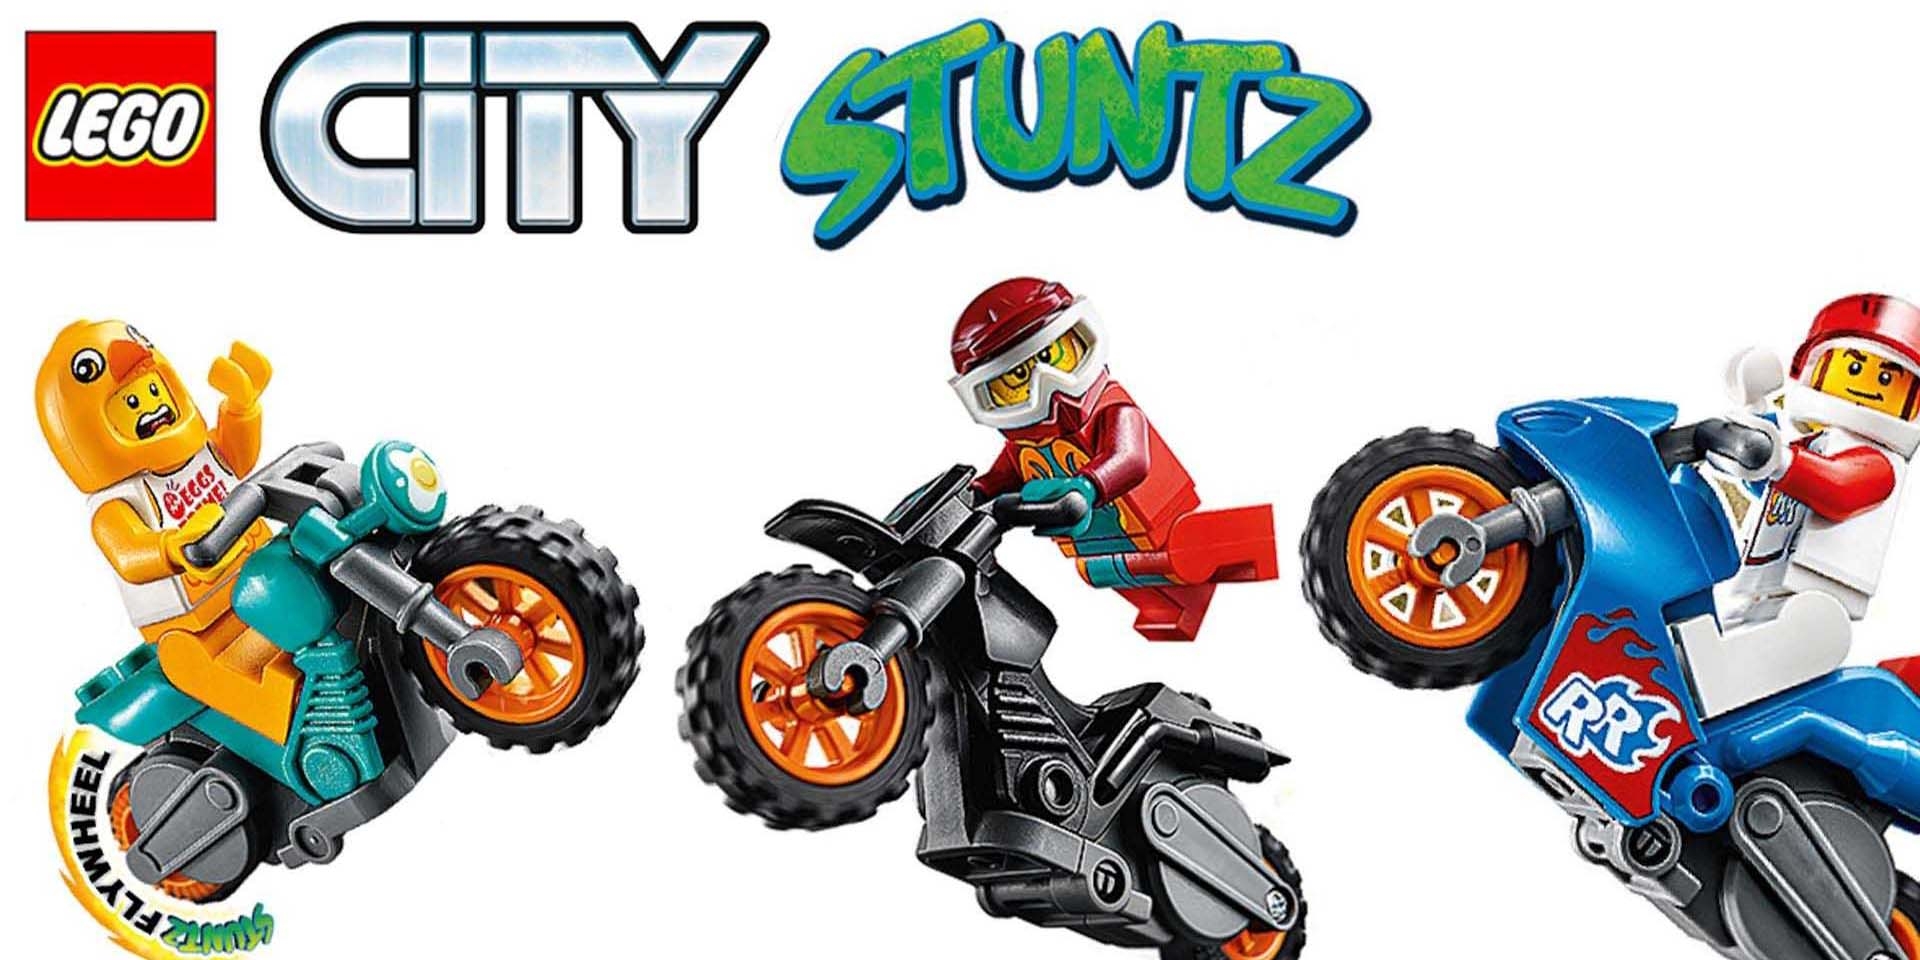 在家也能玩特技 ! 樂高城市大冒險 City Stuntz 特技車組